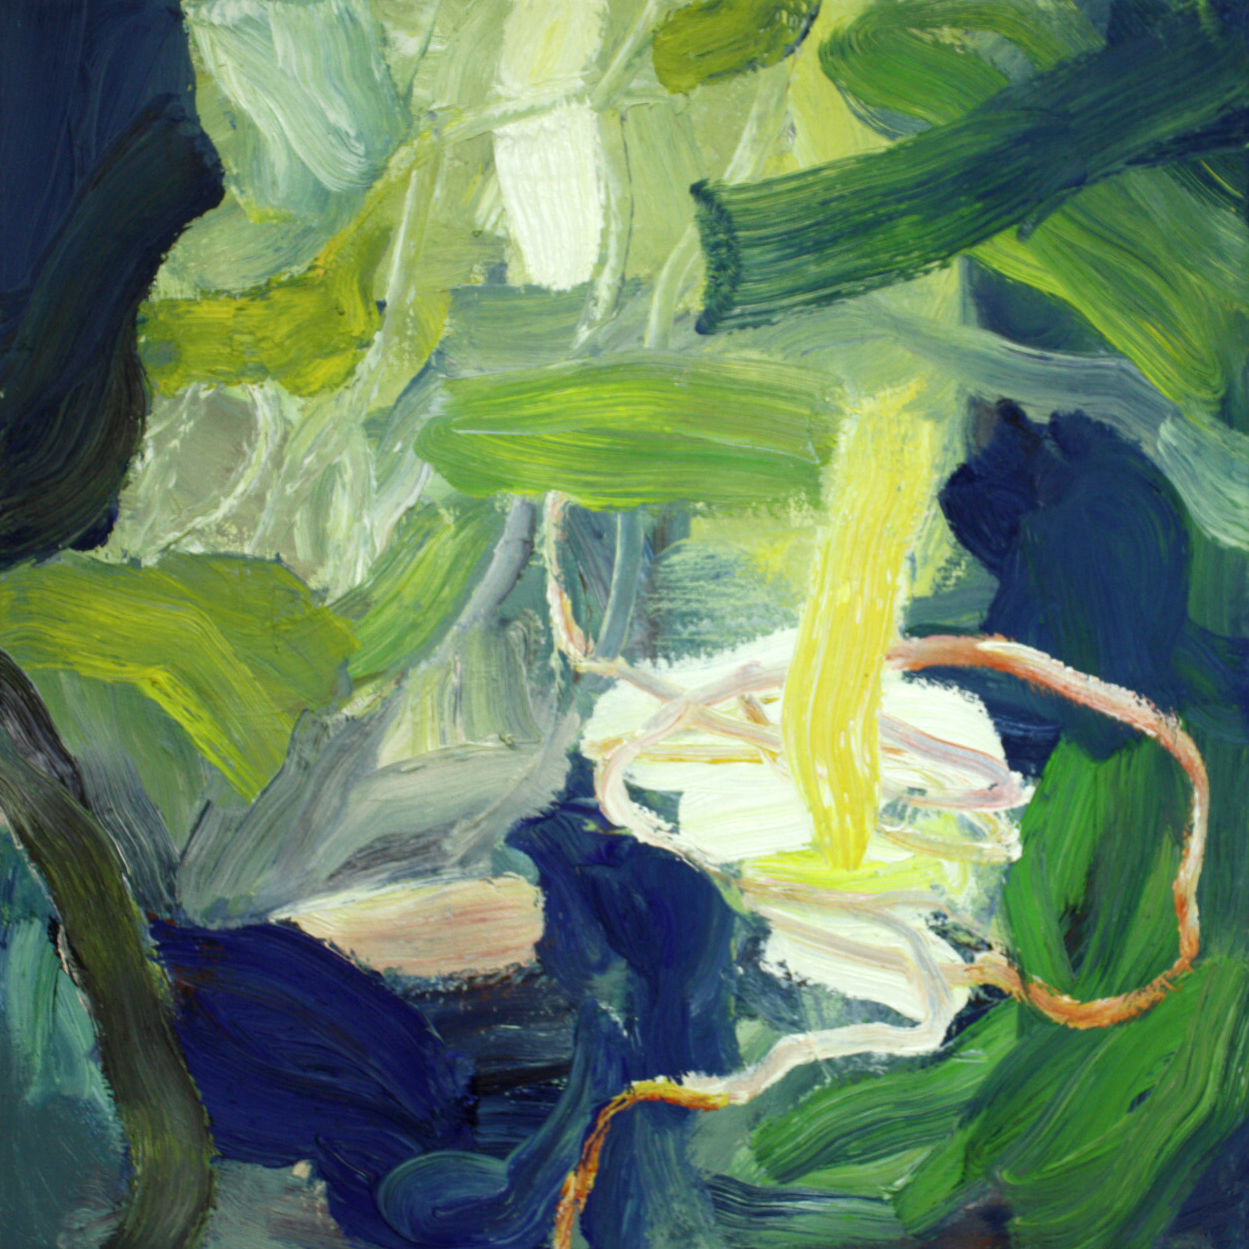 abstraktes Gemälde, vorrangig in grünen und blauen Farbtönen